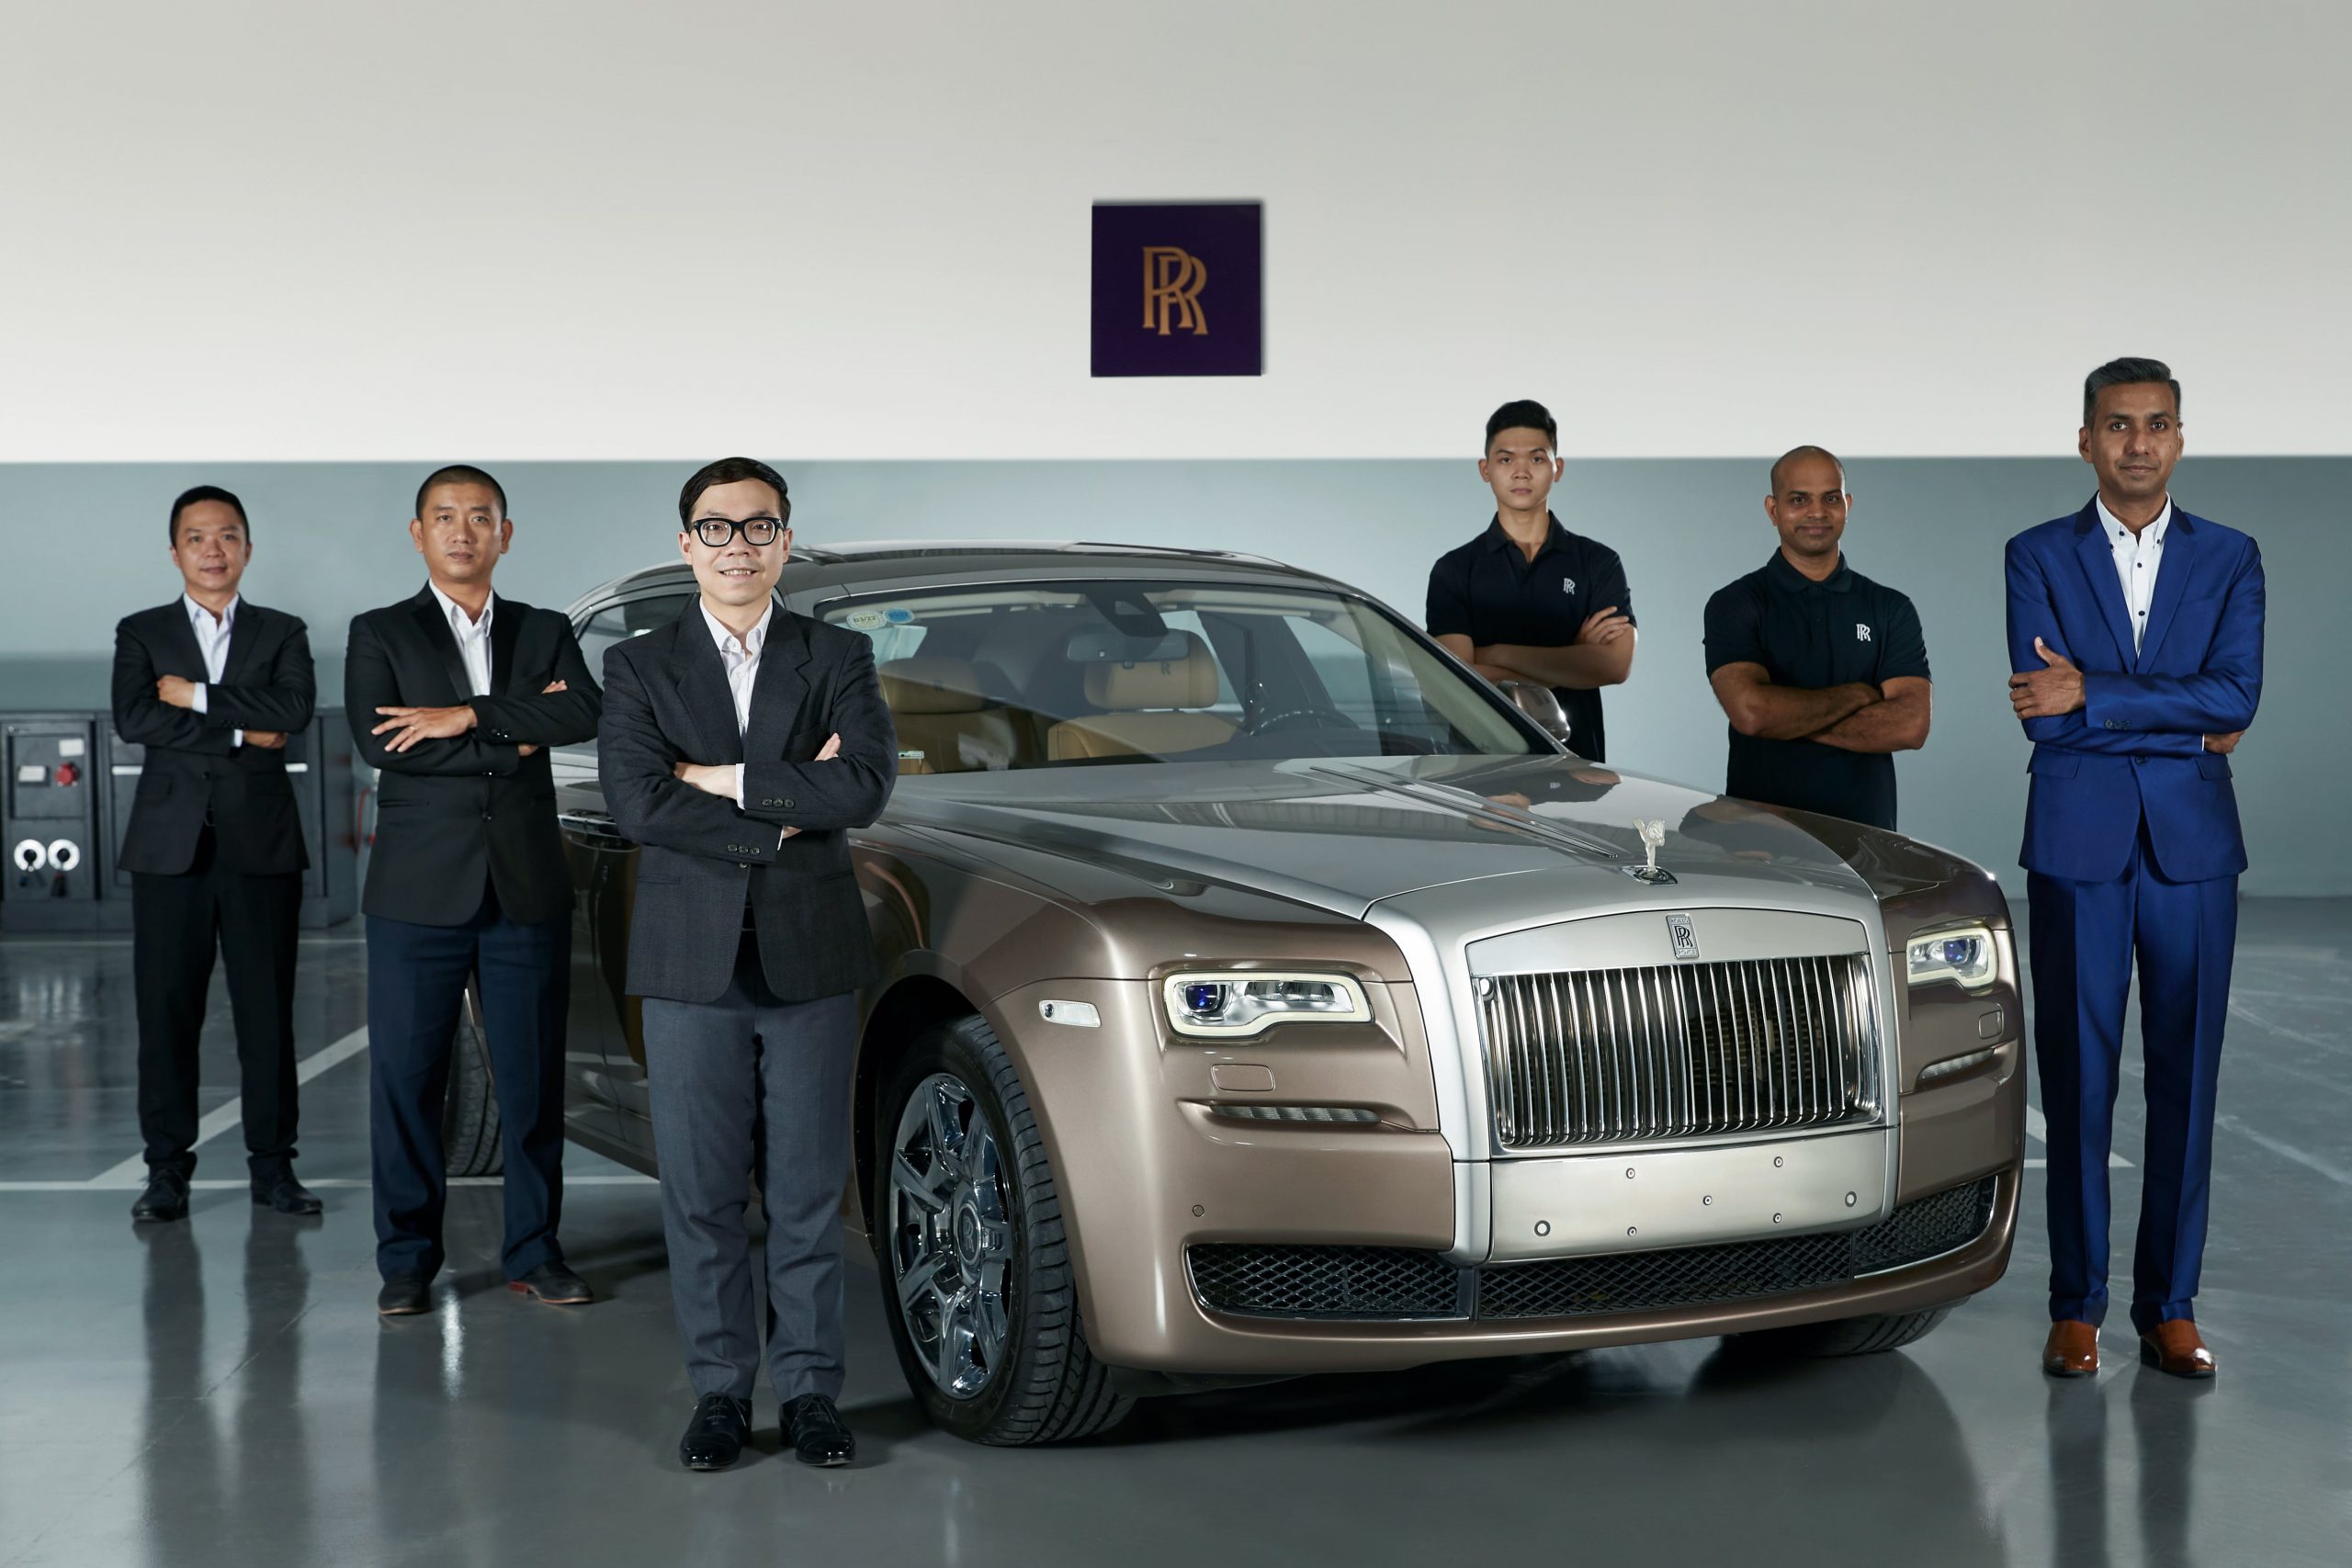 Xưởng dịch vụ ủy quyền của Rolls-Royce Motor Cars tại TP.HCM chính thức đi vào hoạt động dưới sự điều hành của công ty S&S Automotive